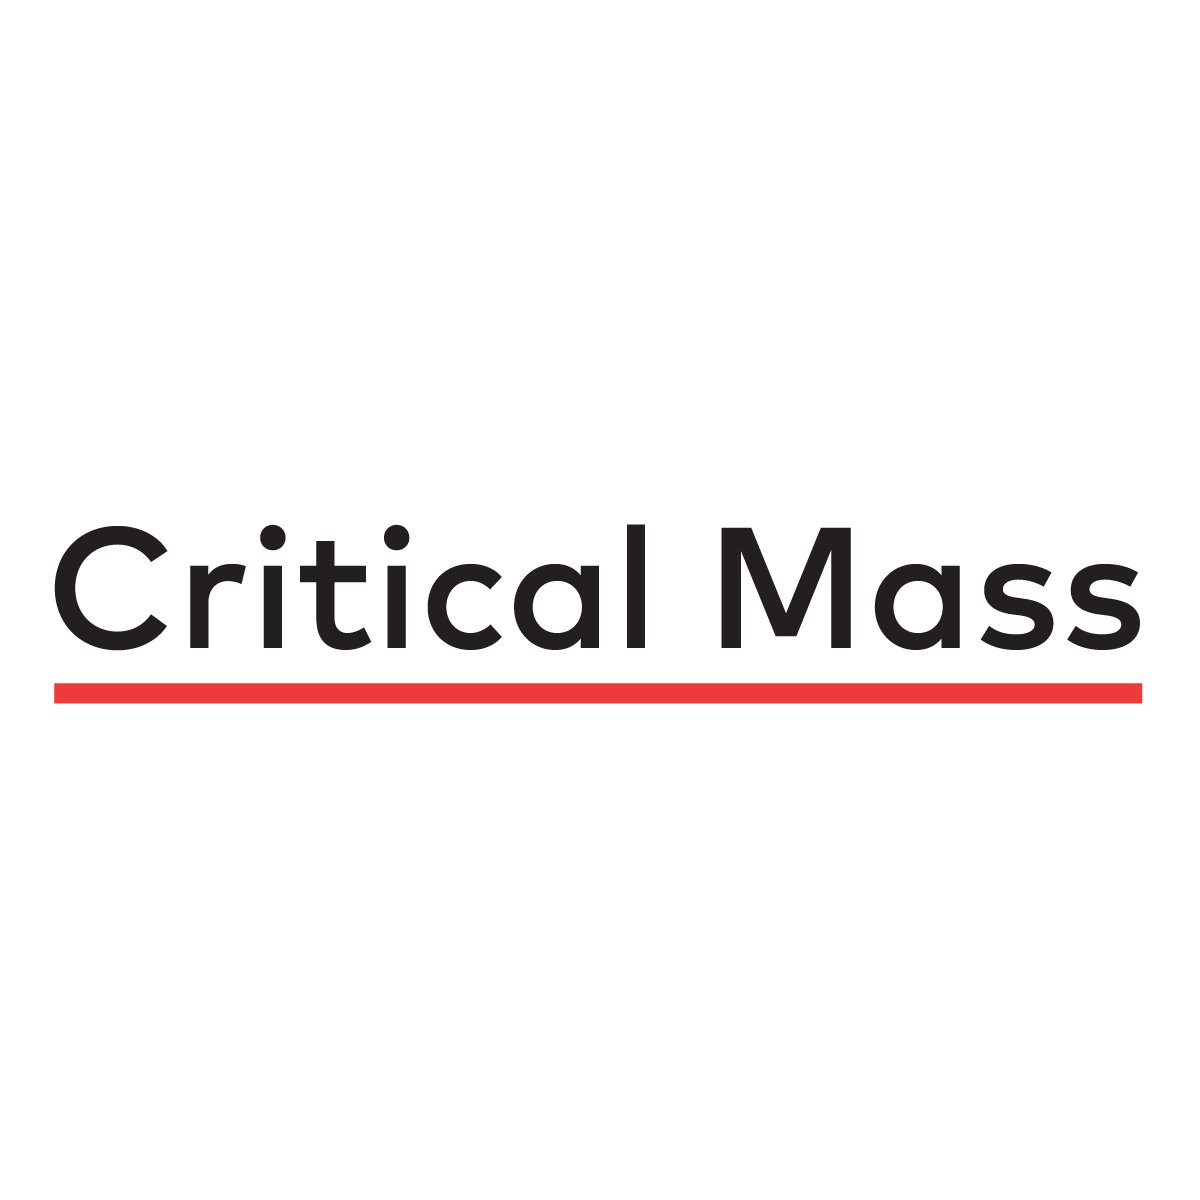 (c) Criticalmass.com